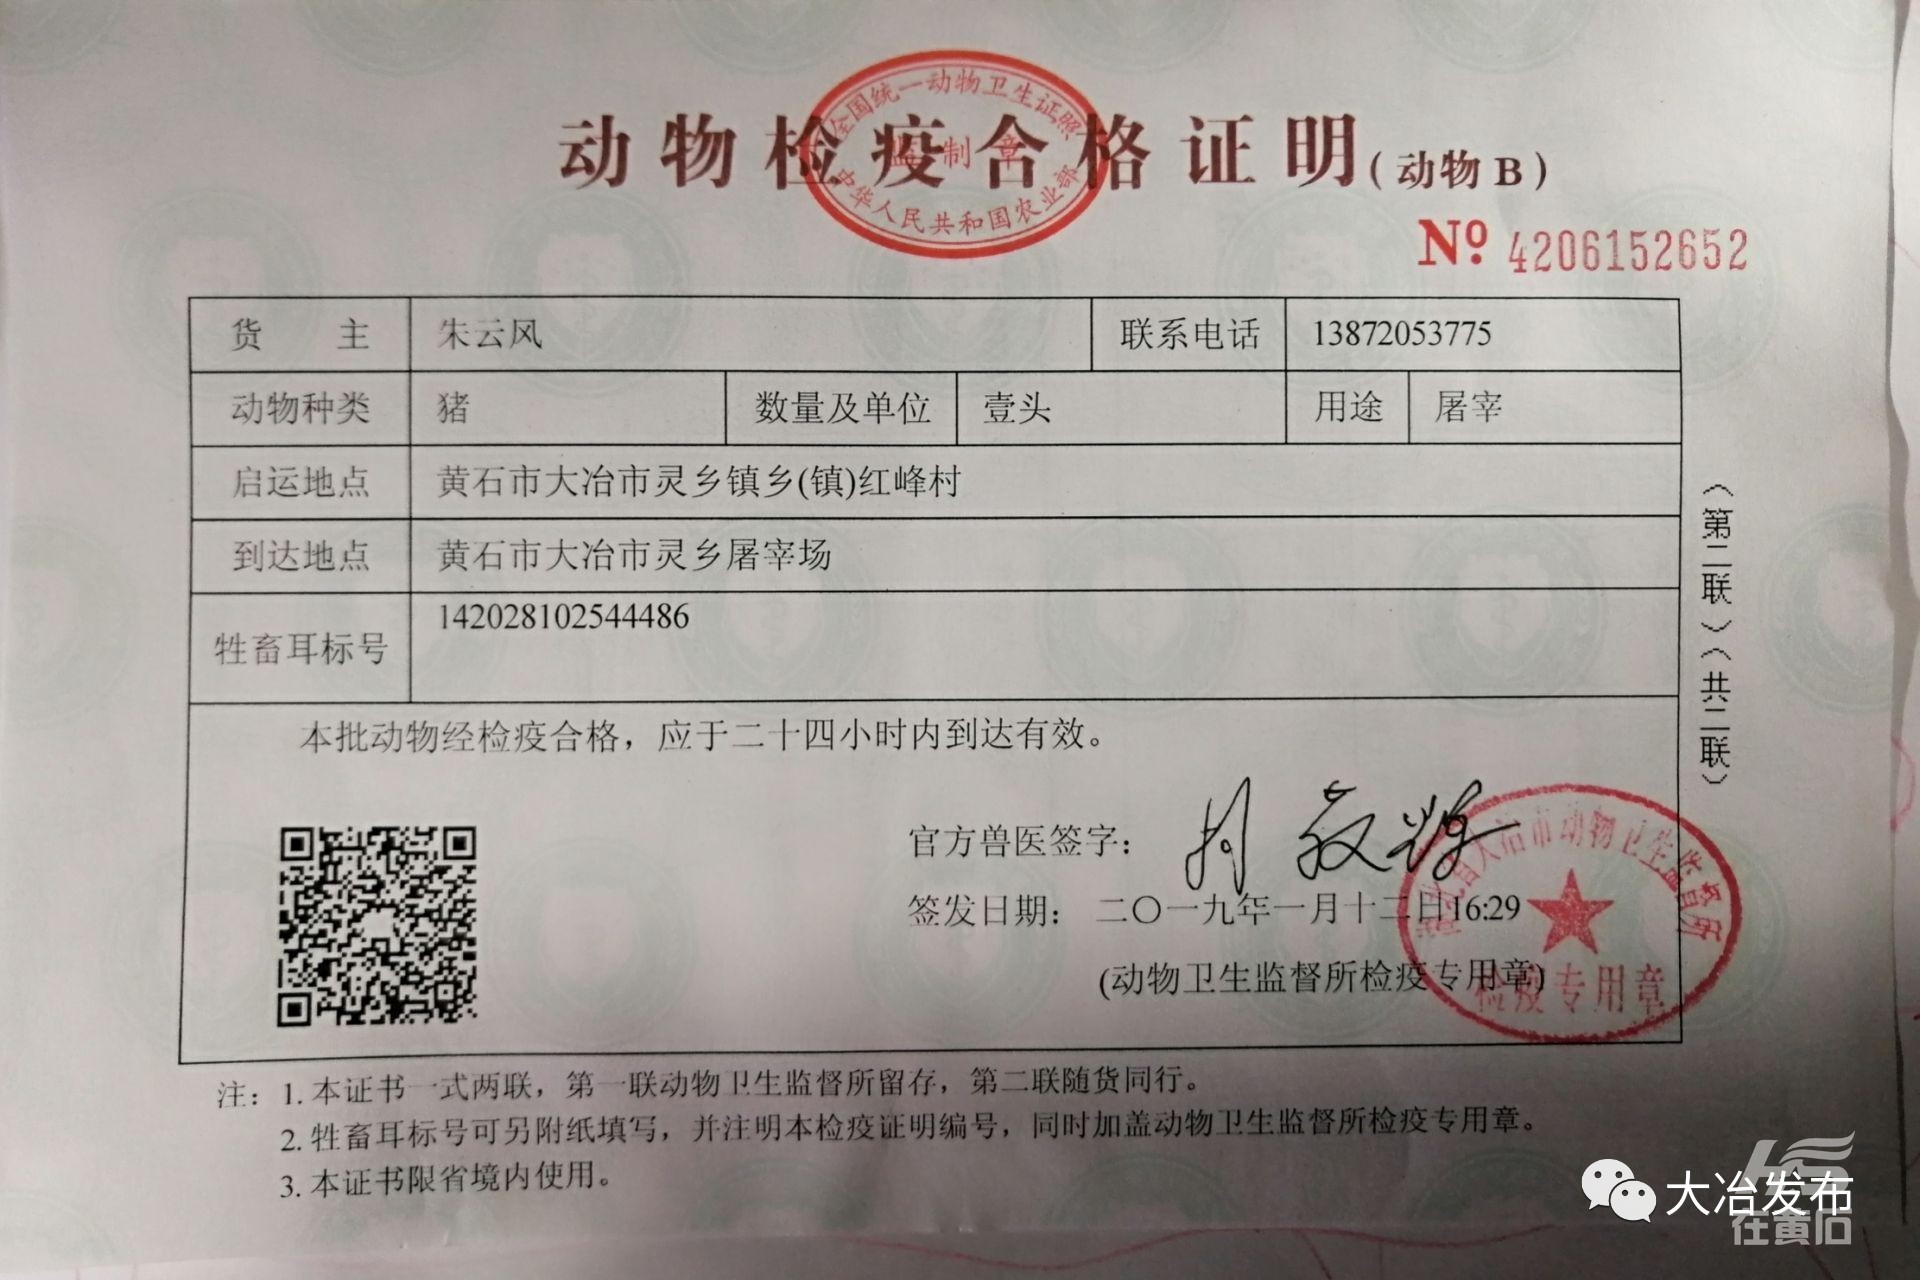 IBRS-2猪肾细胞-上海雅吉生物科技有限公司